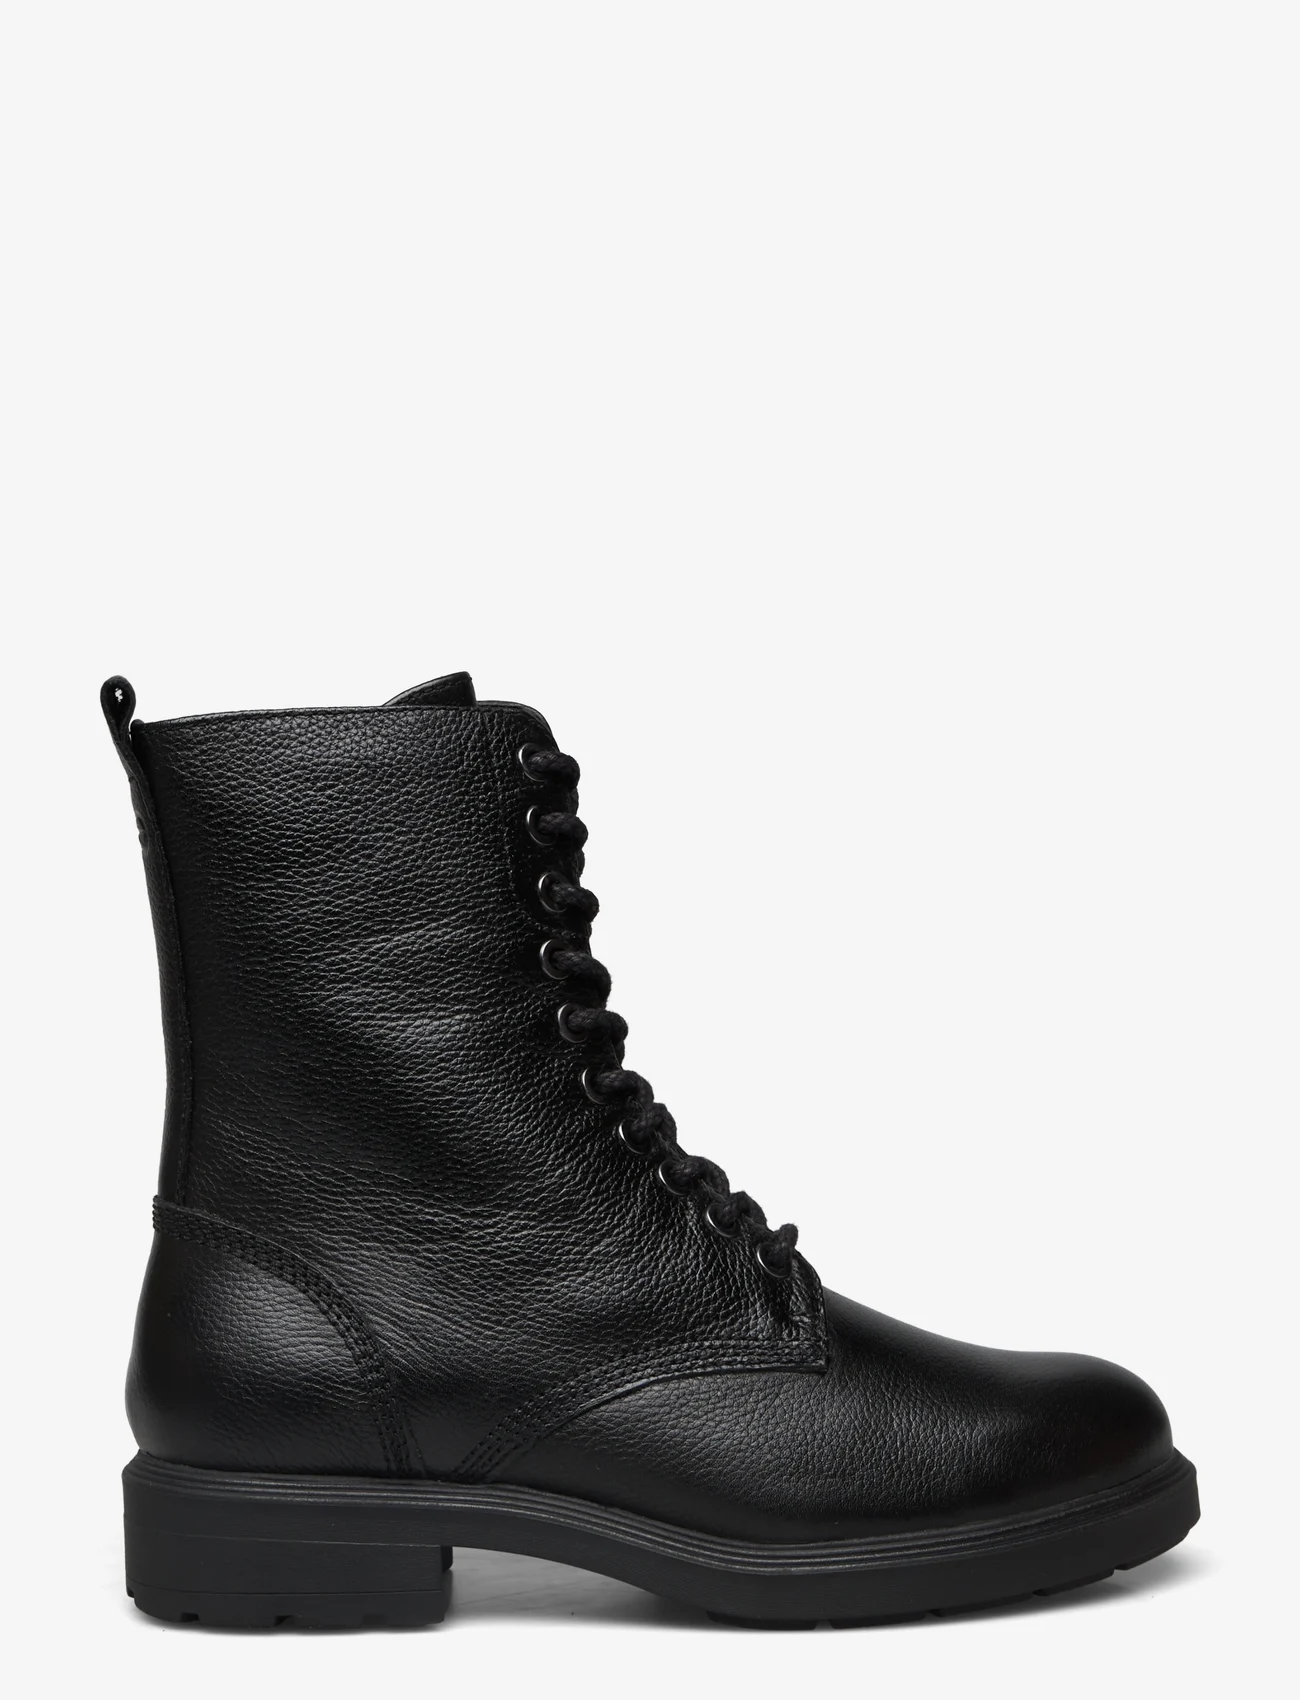 Tamaris - Women Boots - Šņorējami zābaki - black leather - 1